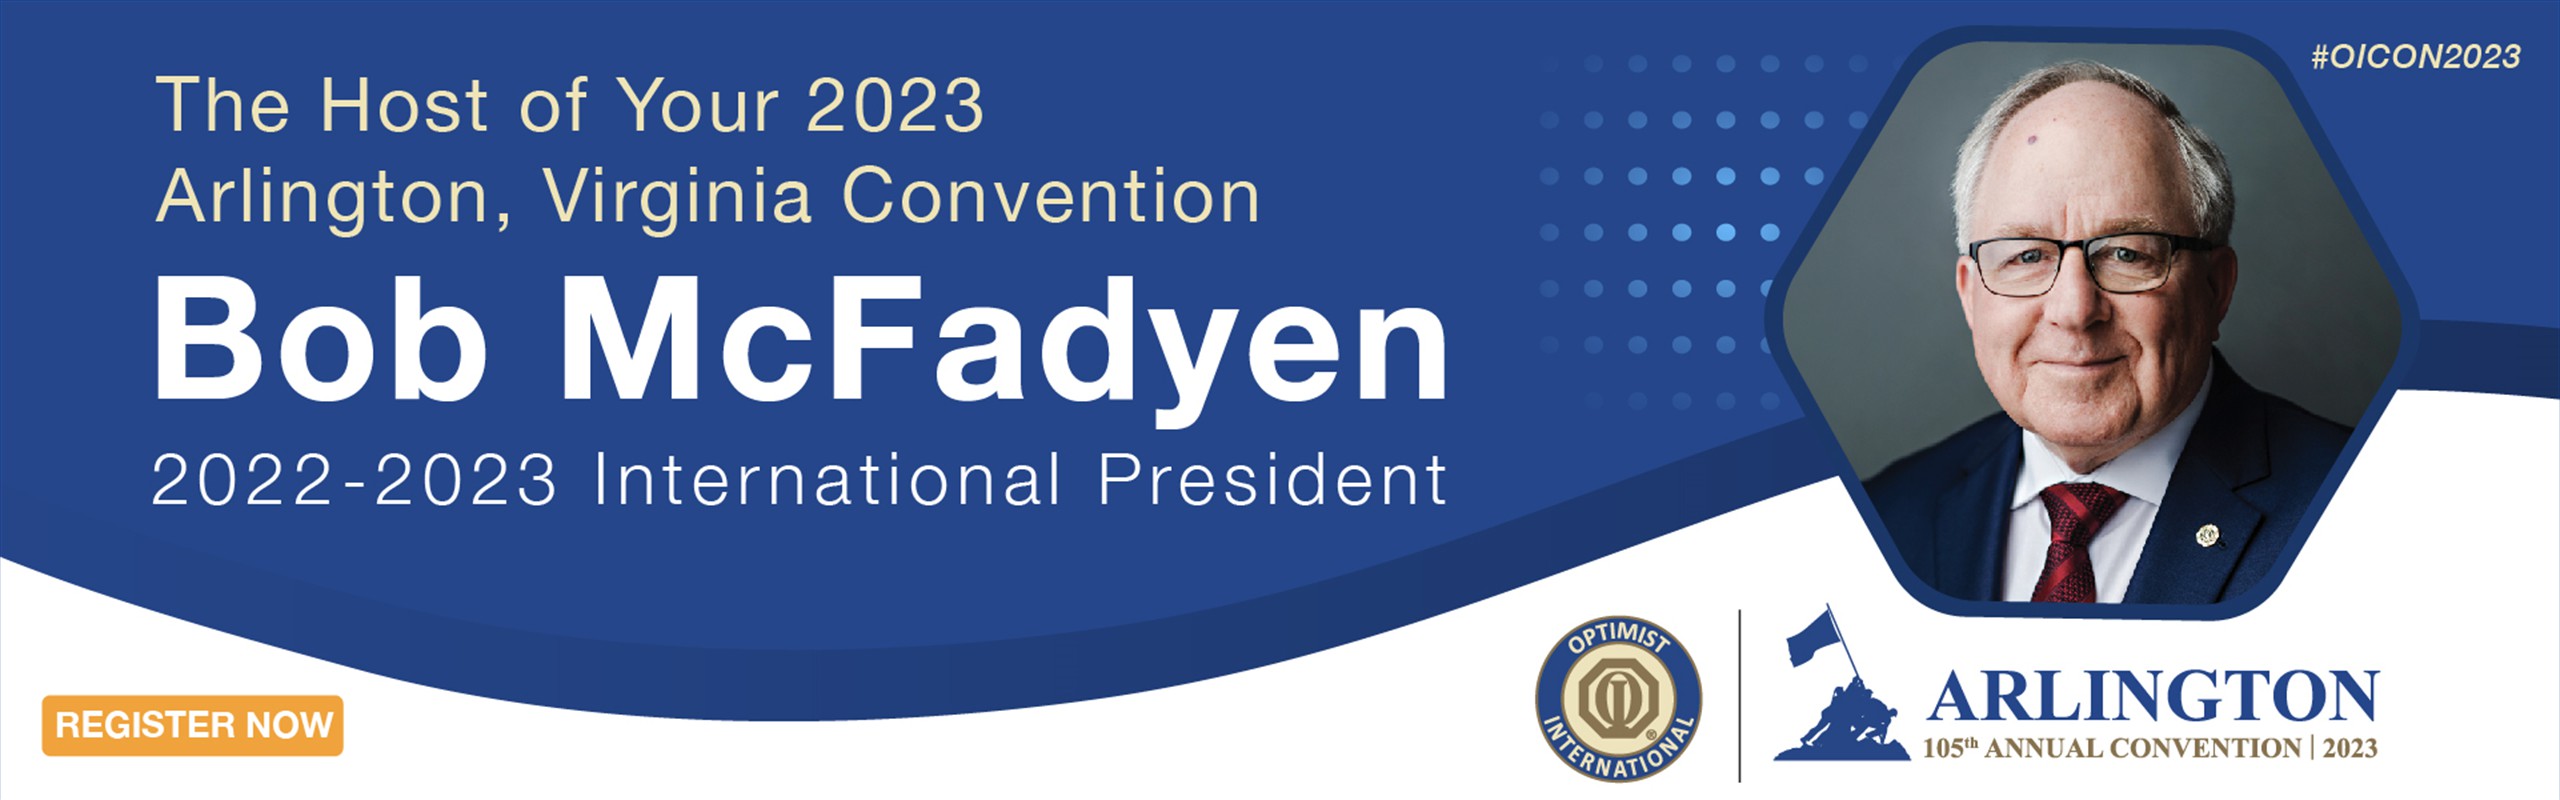 2023-Convention_WebBanner-McFadyen